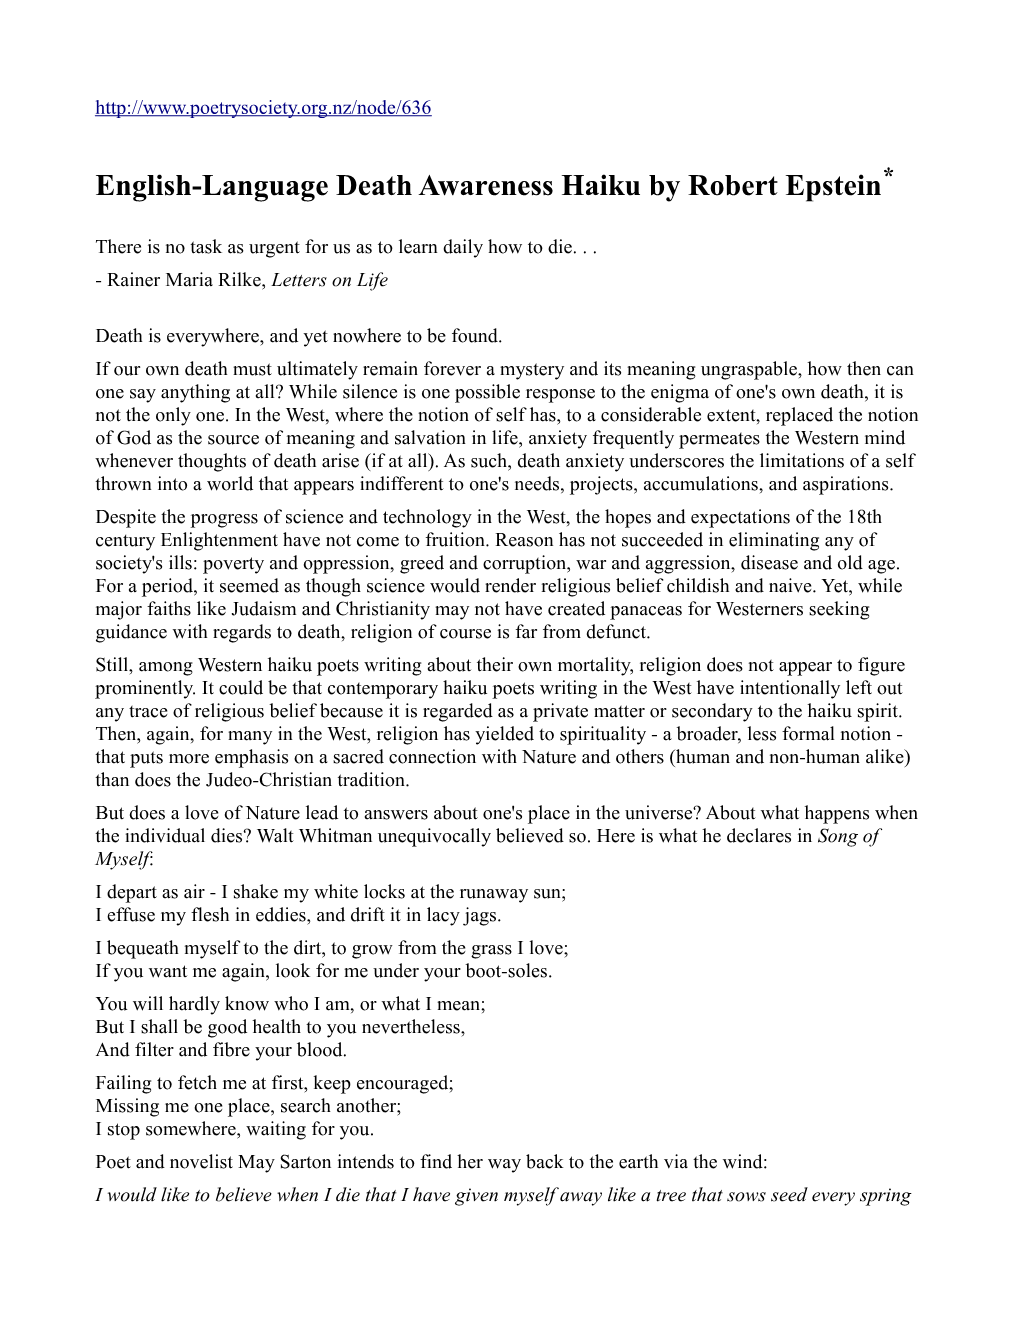 English-Language Death Awareness Haiku by Robert Epstein*